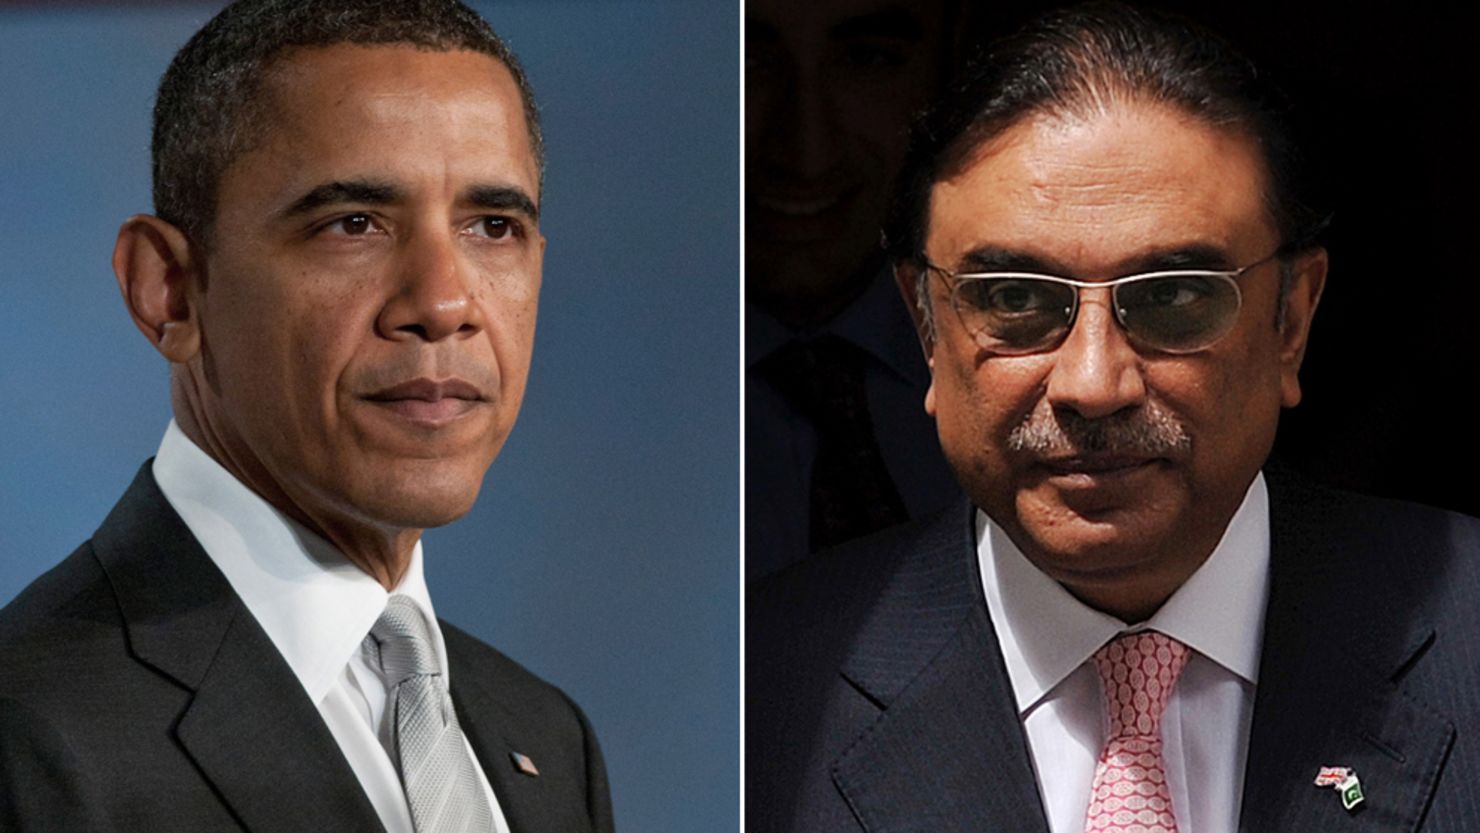 President Obama called Pakistani President Asif Ali Zardari on Sunday, the White House said.